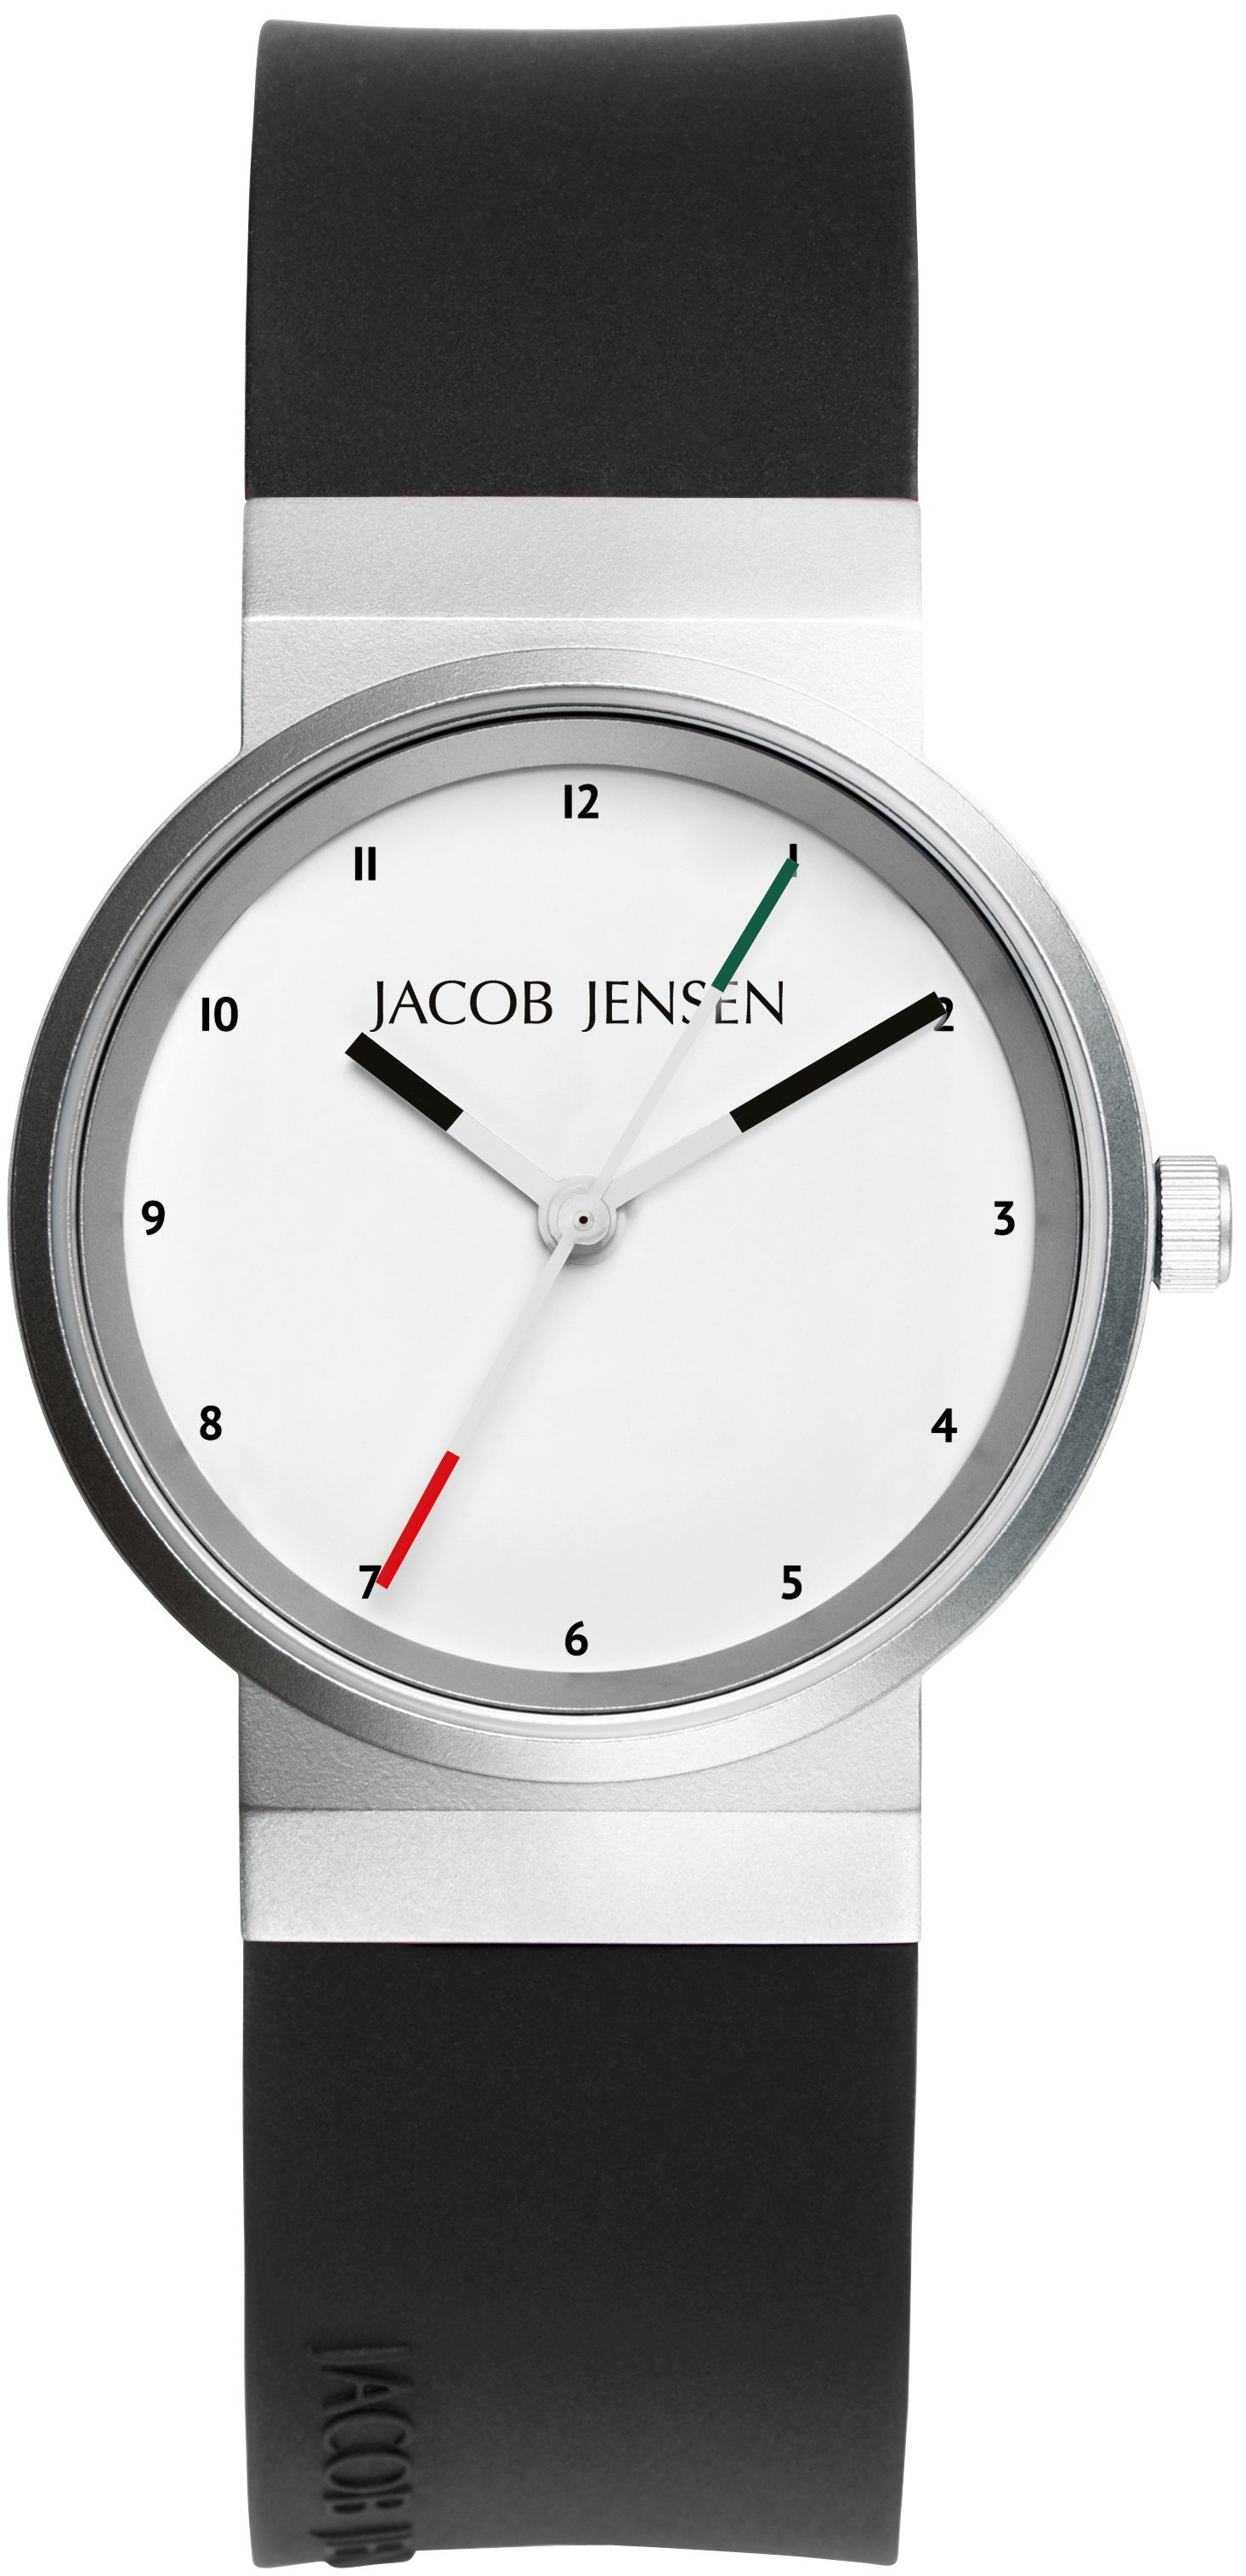 Jacob Jensen Quarzuhr Damenuhr Design Edelstahl Kautschukband NEW LINE ⌀29mm, optische Täuschung vom durchlaufenden Armband